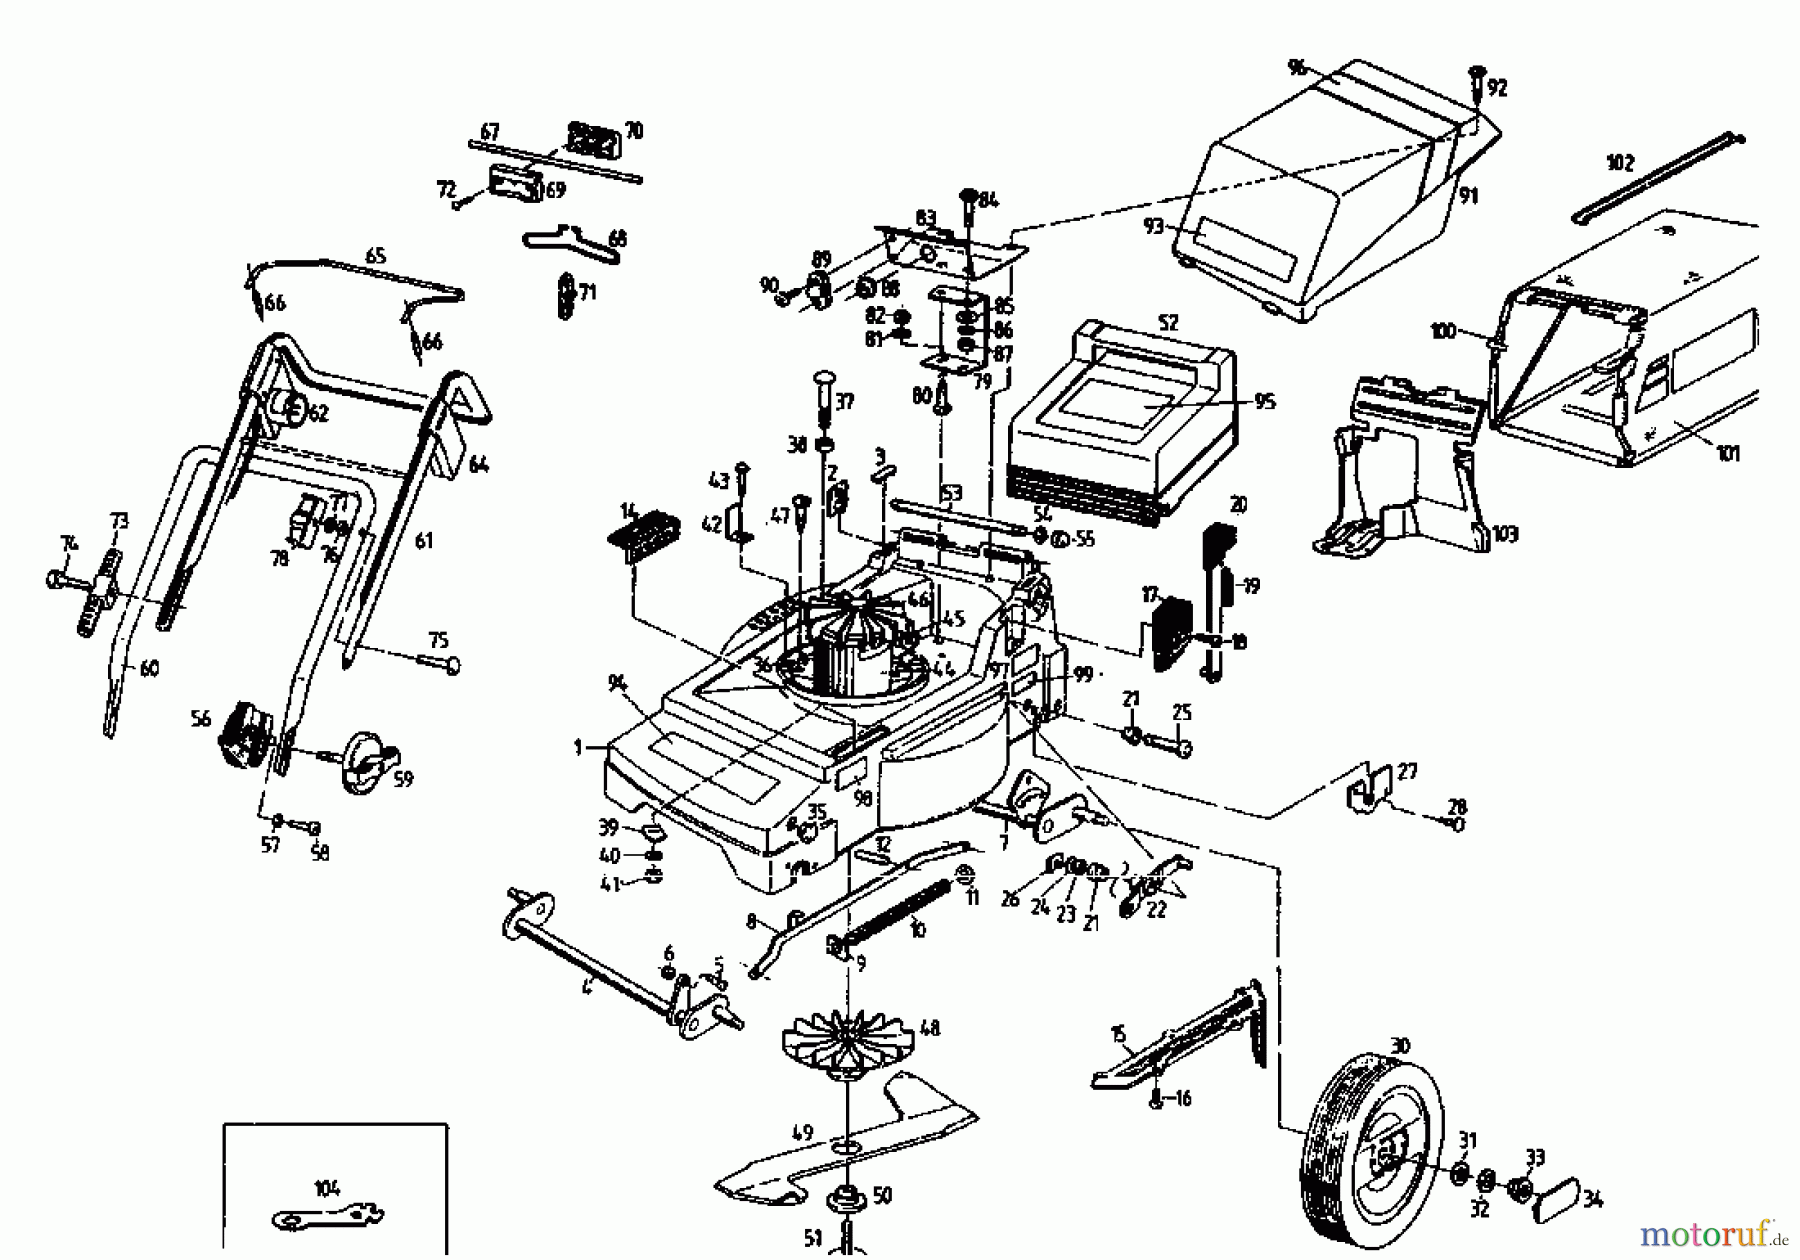  Gutbrod Tondeuse électrique MHE 400 04019.03  (1995) Machine de base